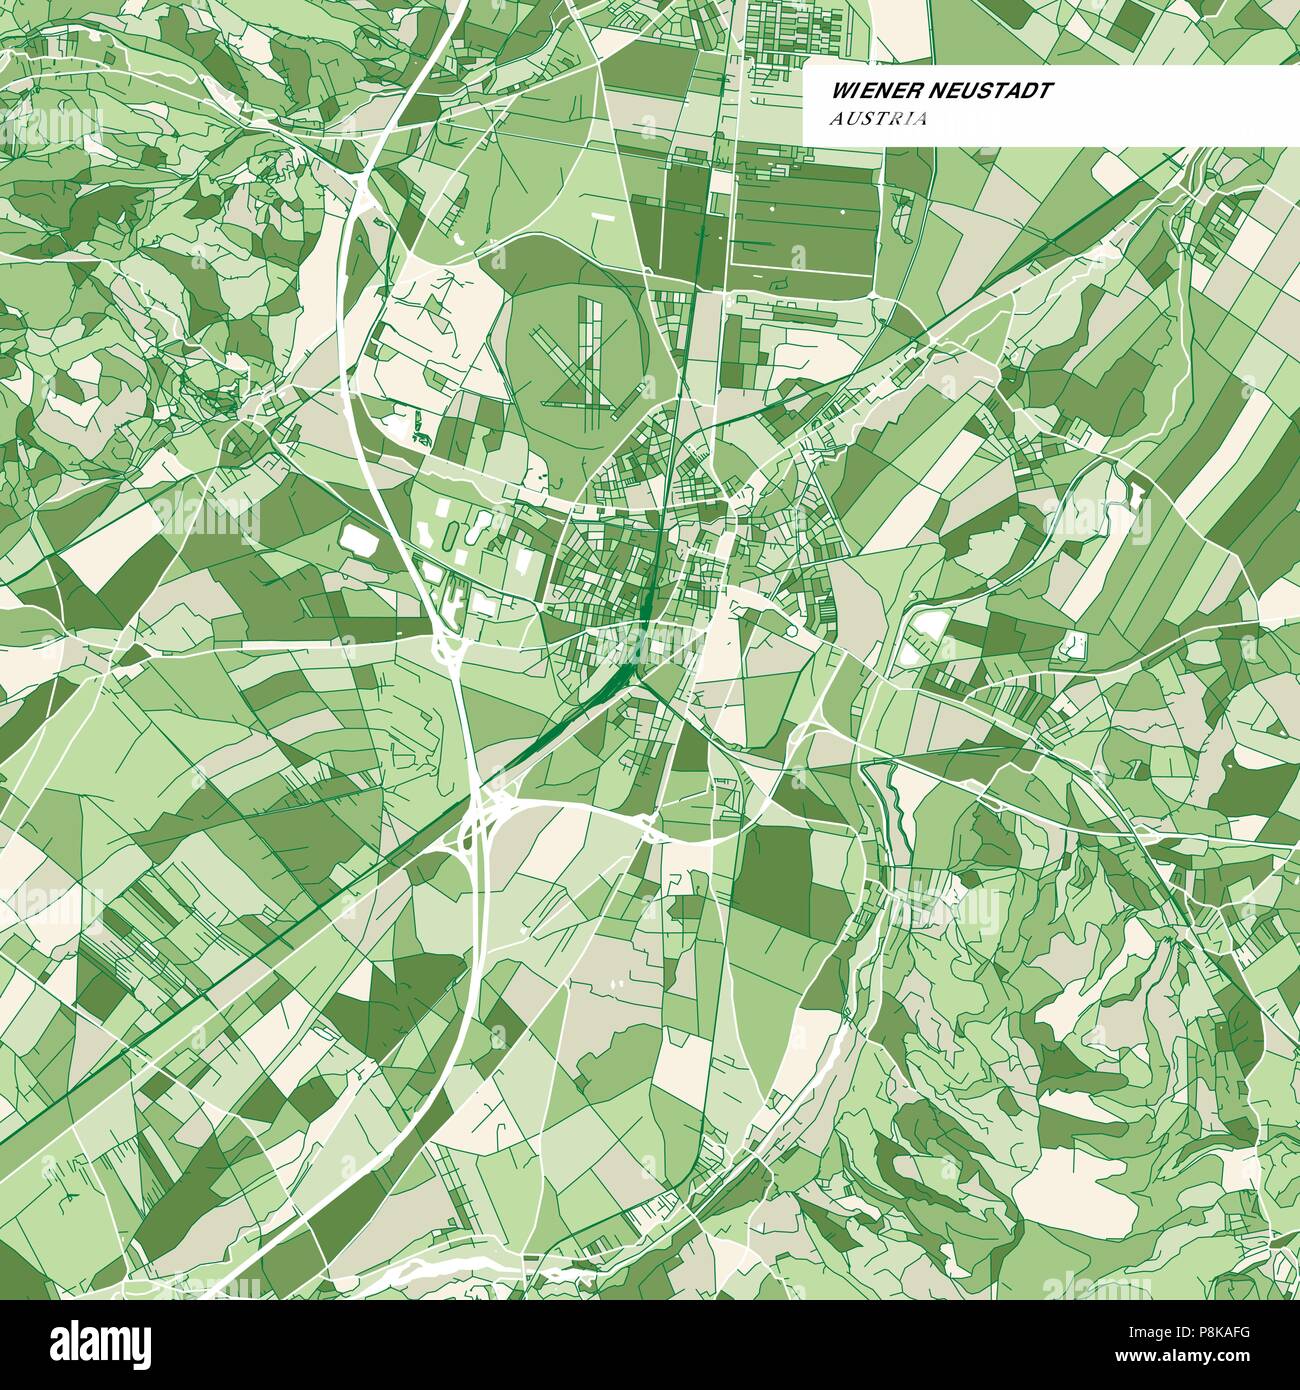 Bunte Karte von Wiener Neustadt, Österreich. Hintergrund Version für Infografik und Marketing Projekte. Diese Karte von Wiener Neustadt, enthält typische Lan Stock Vektor